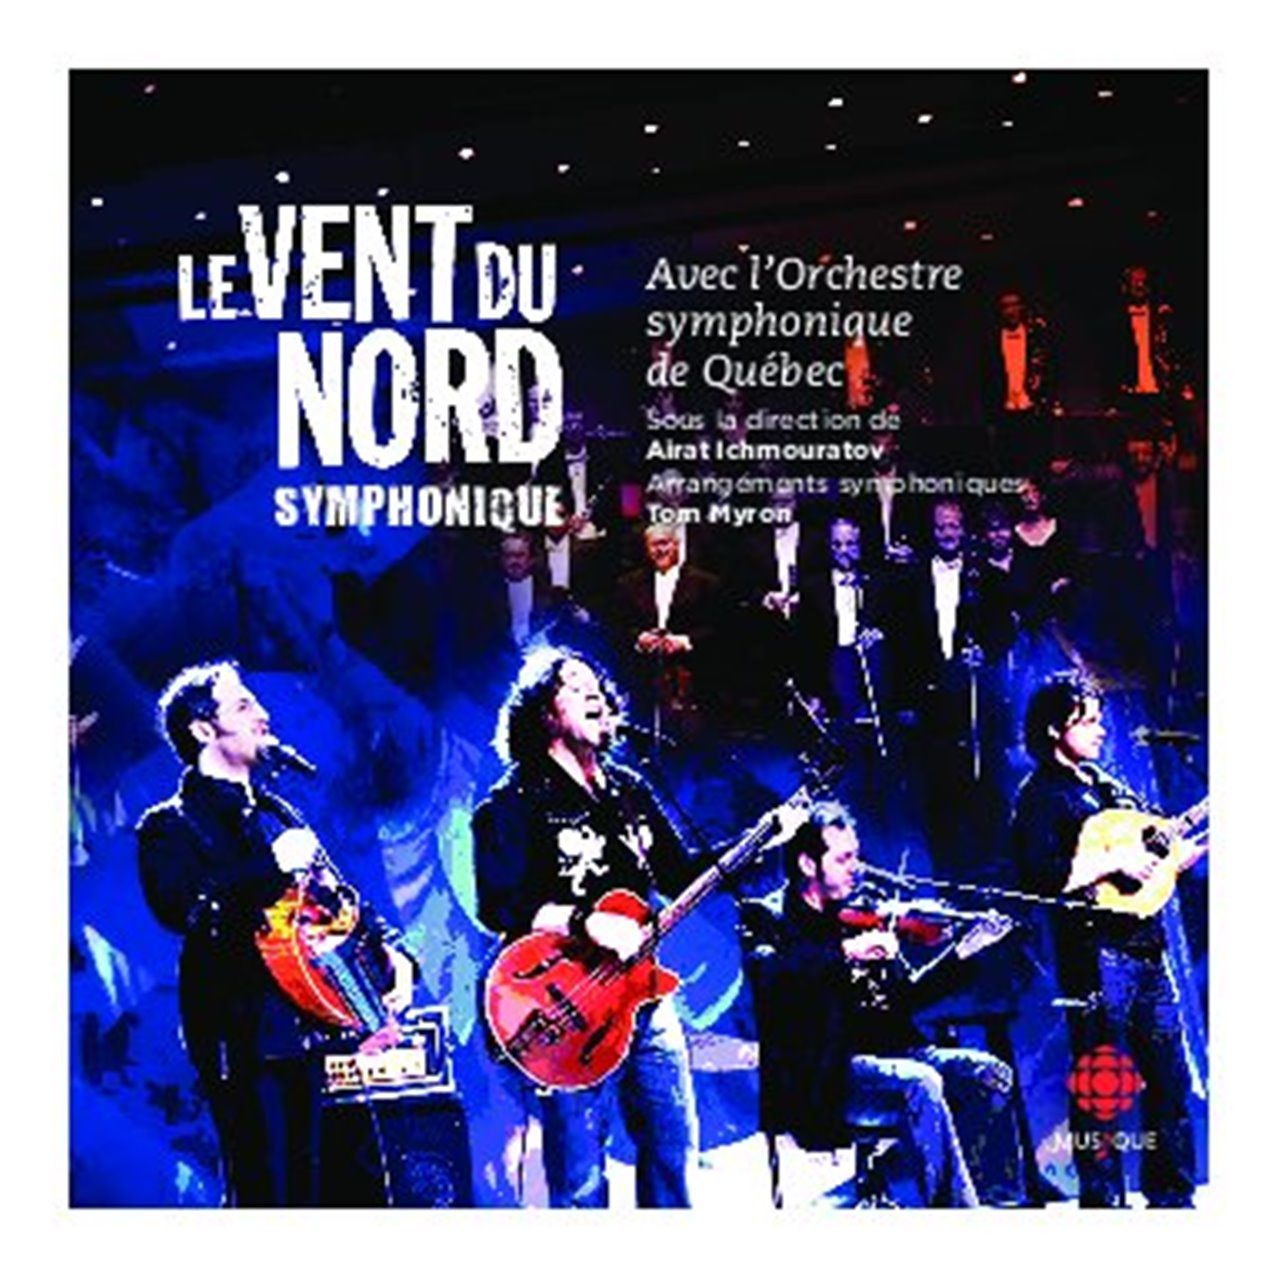 Le Vent Du Nord – Symphonique cover album